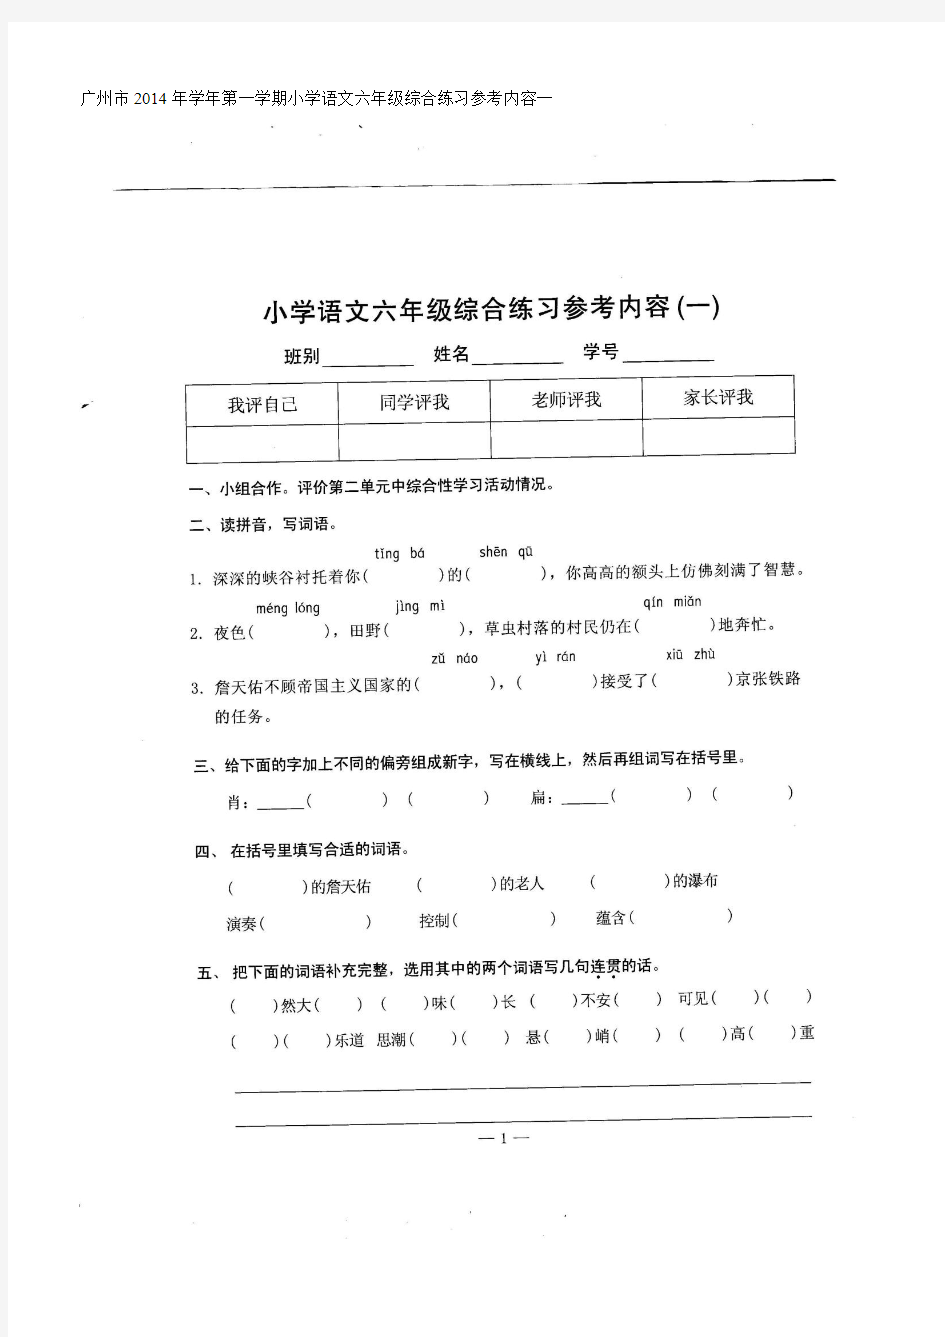 广州市2014年学年第一学期小学语文六年级综合练习参考内容一